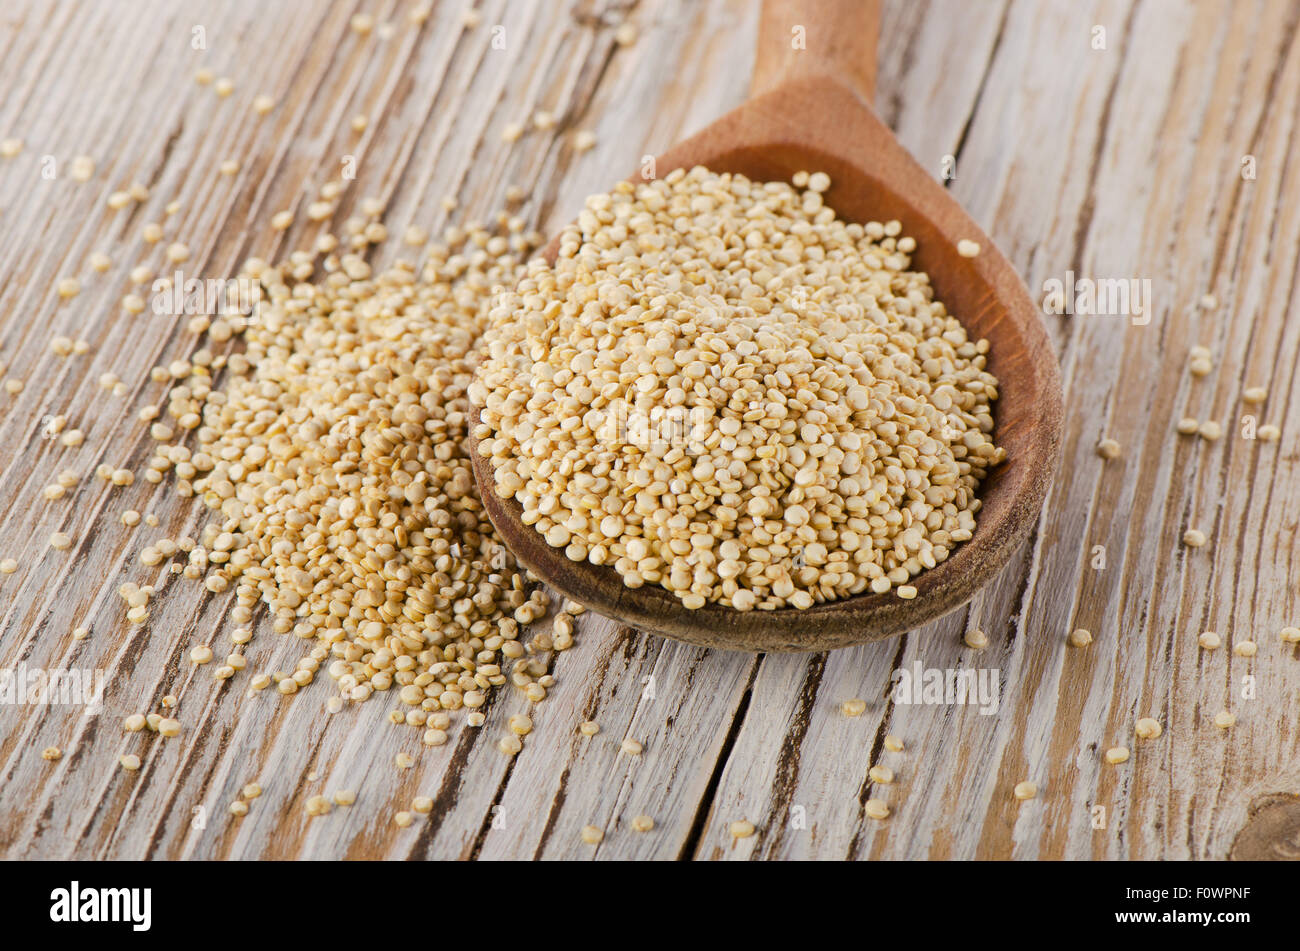 Les graines de quinoa libre sur un fond de bois. Selective focus Banque D'Images